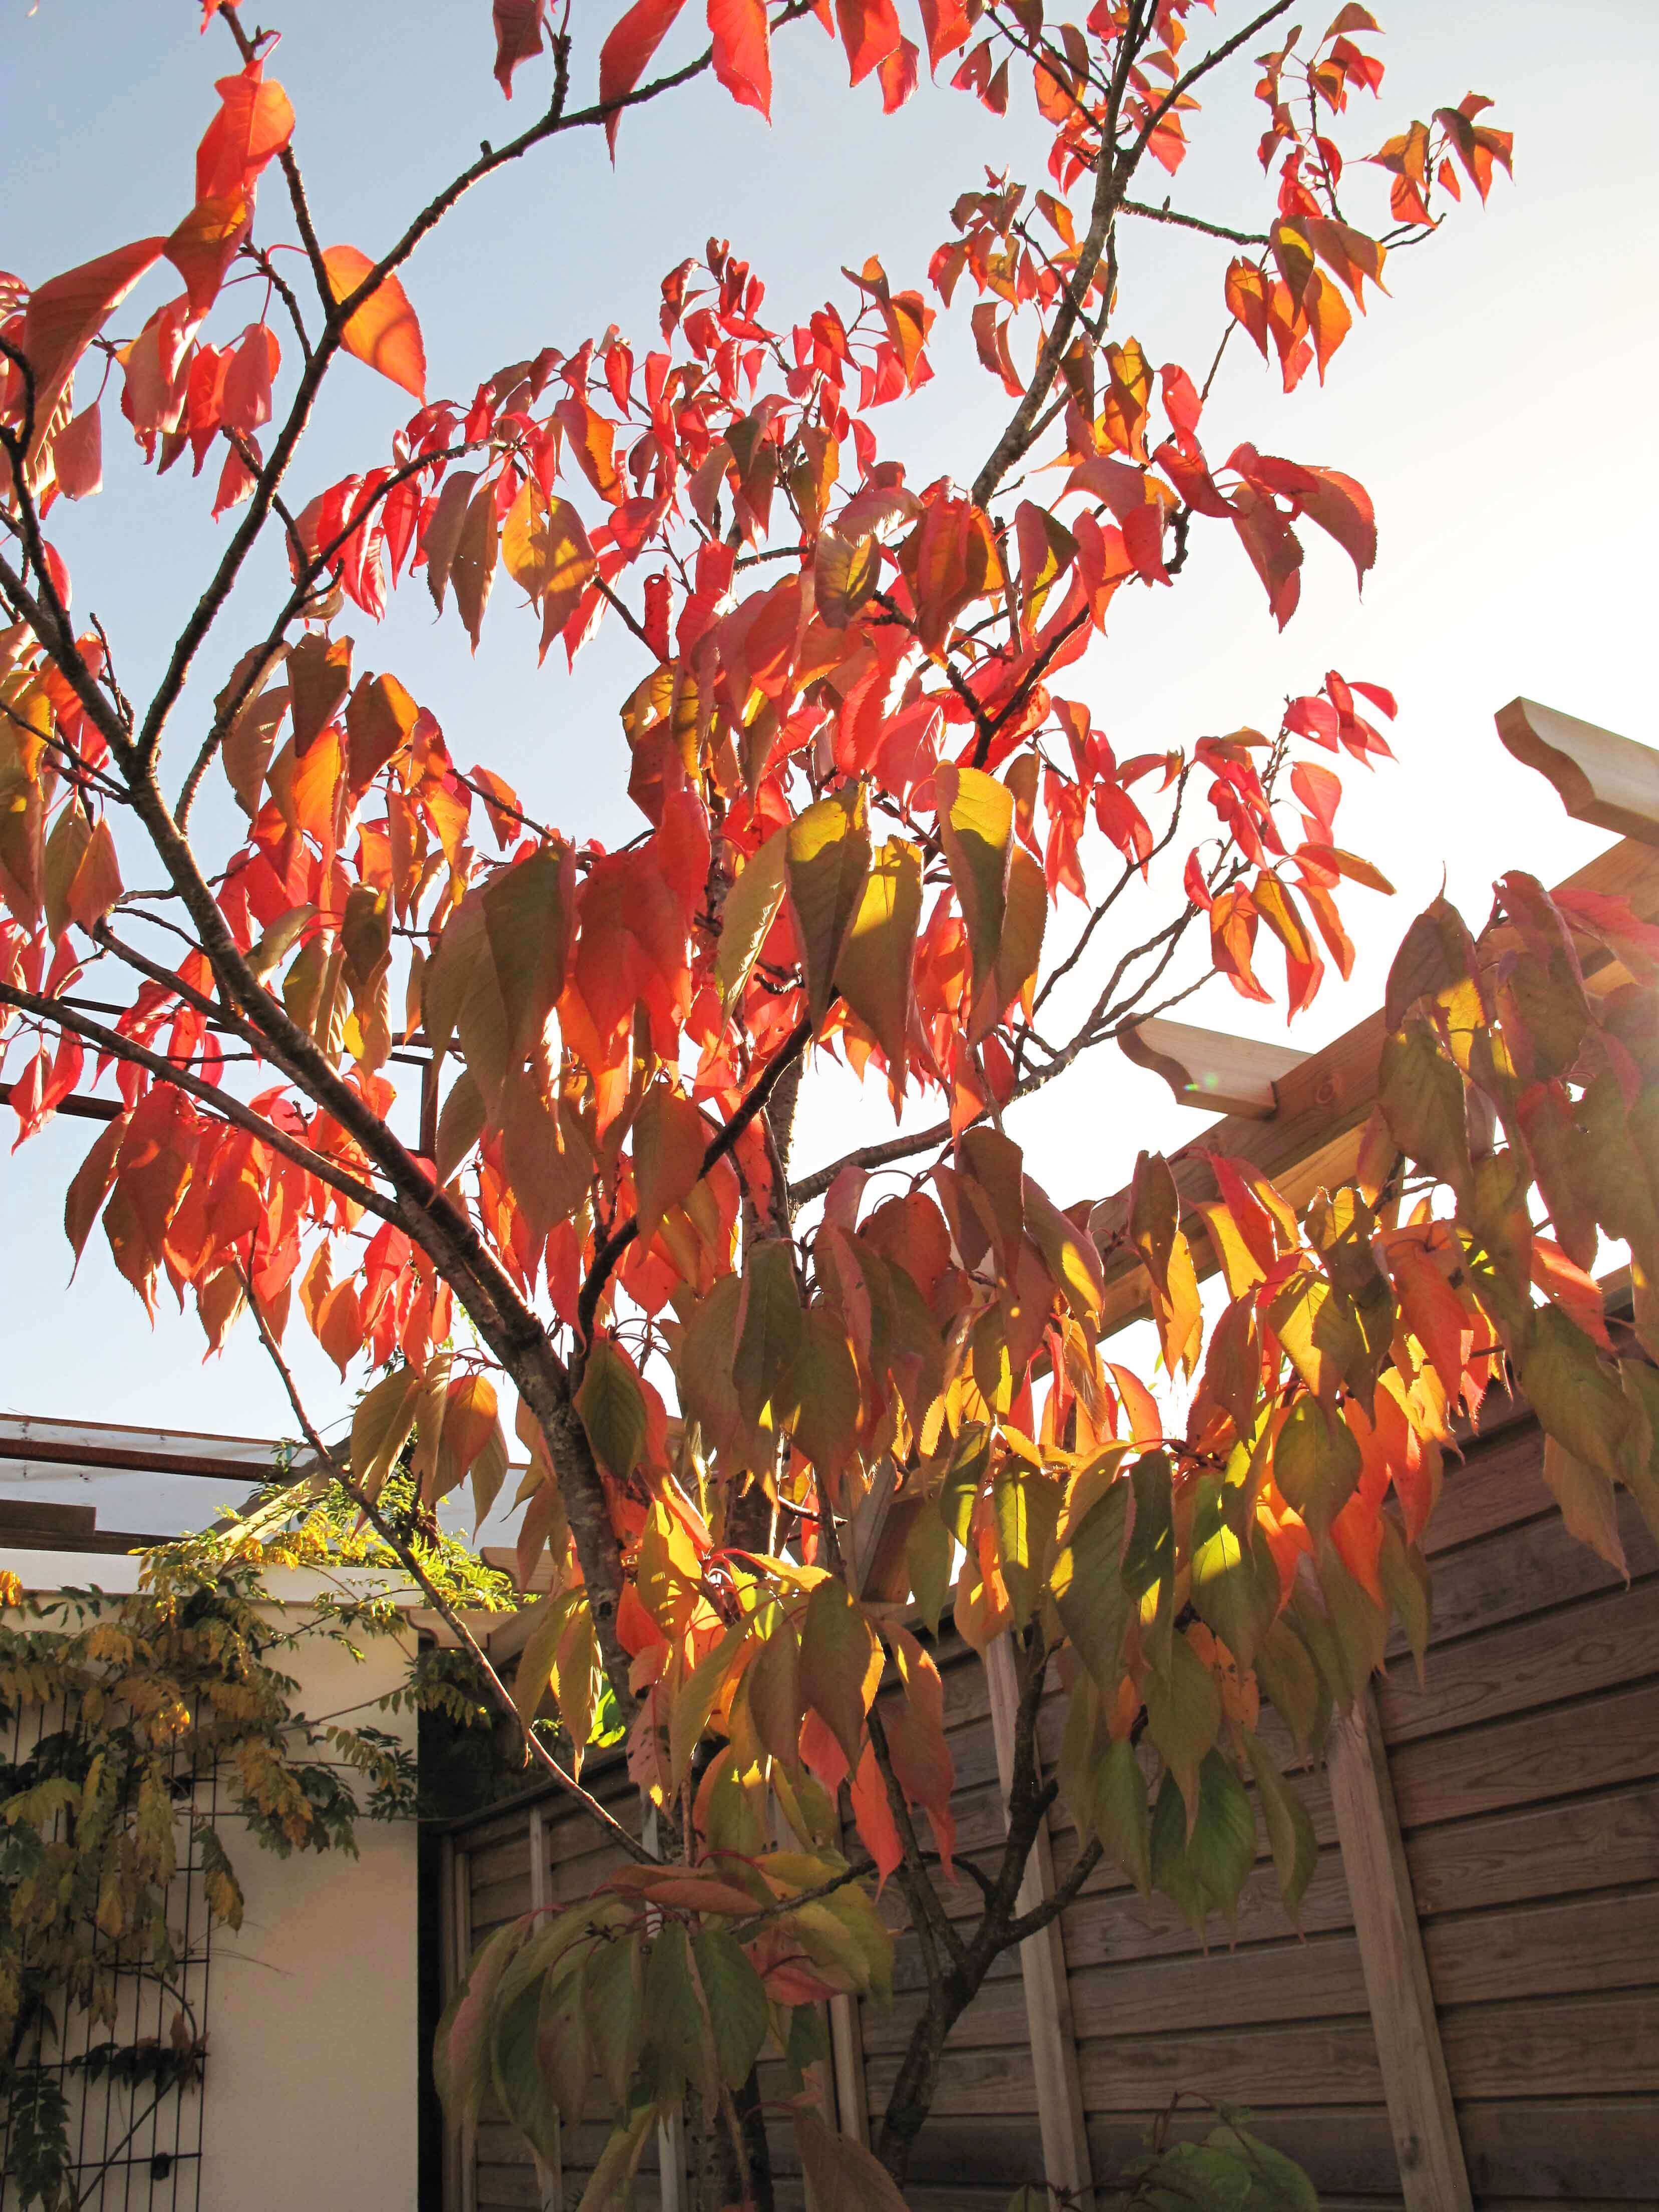 Red prunus leaves in October light